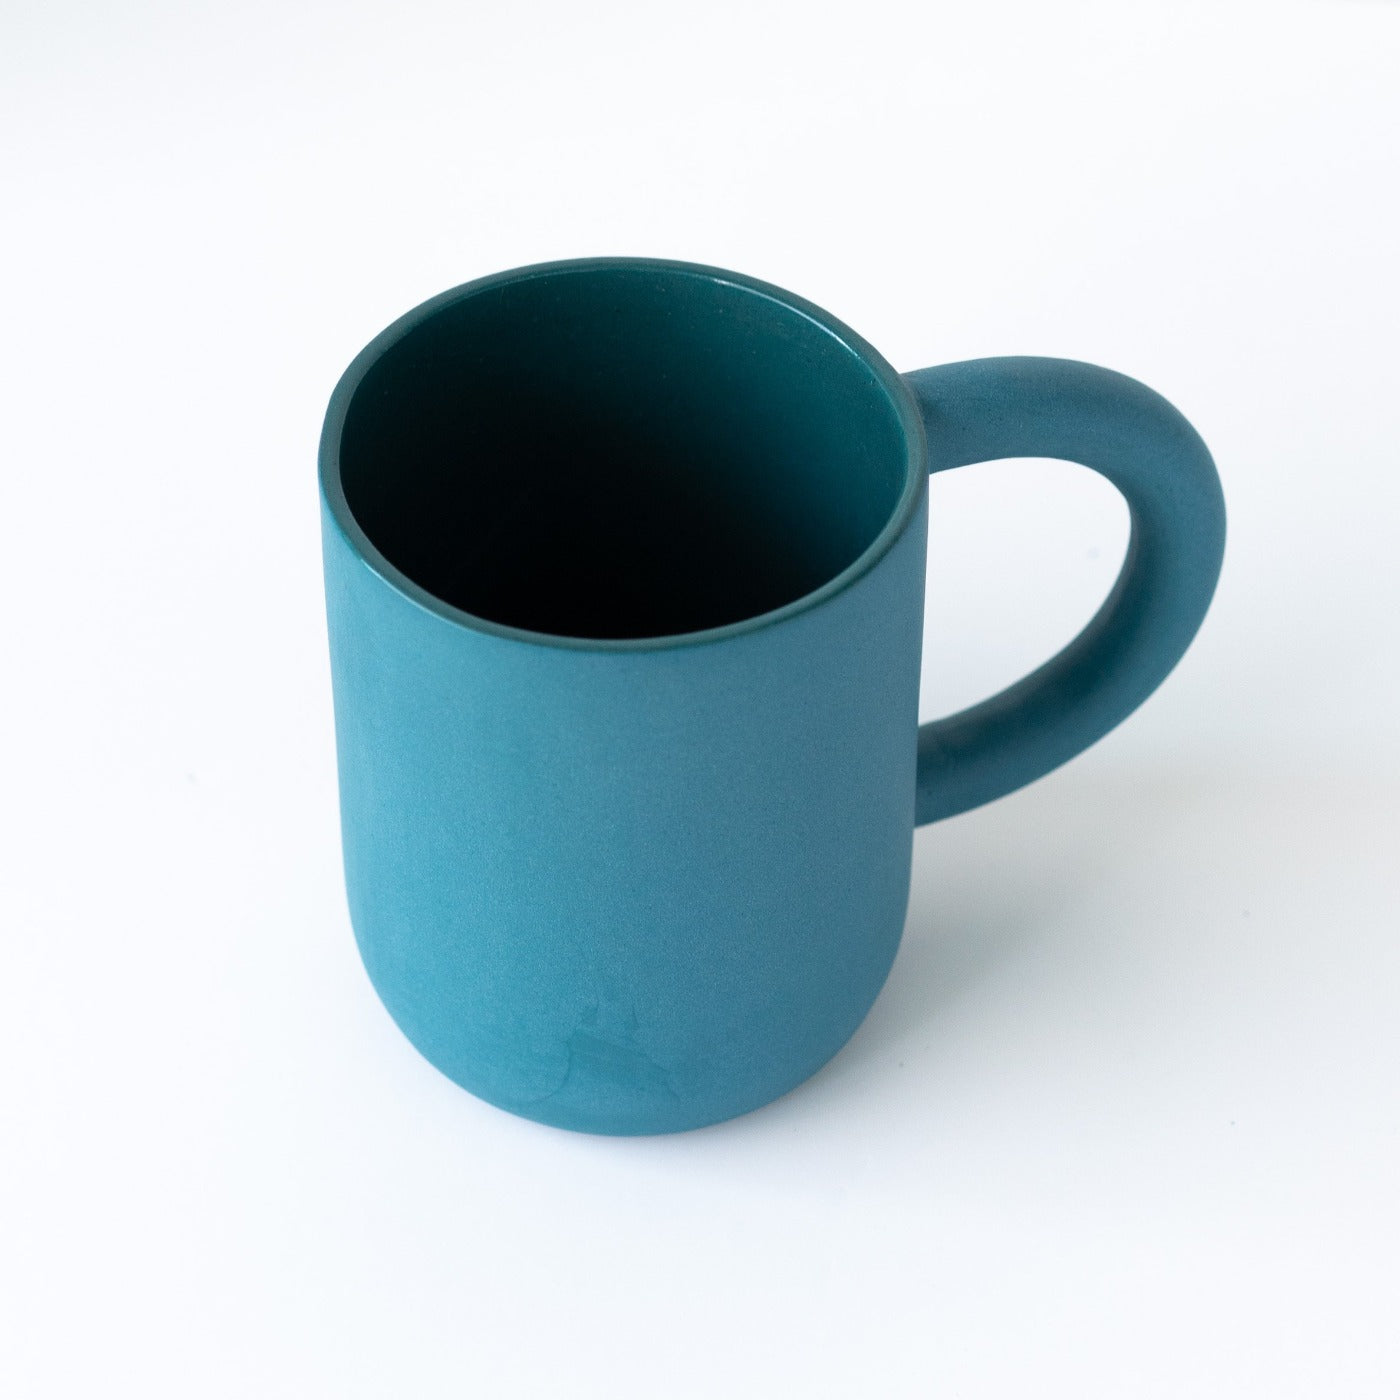 laureanne kootstra design hand made ceramic petrol blue porcelain mug